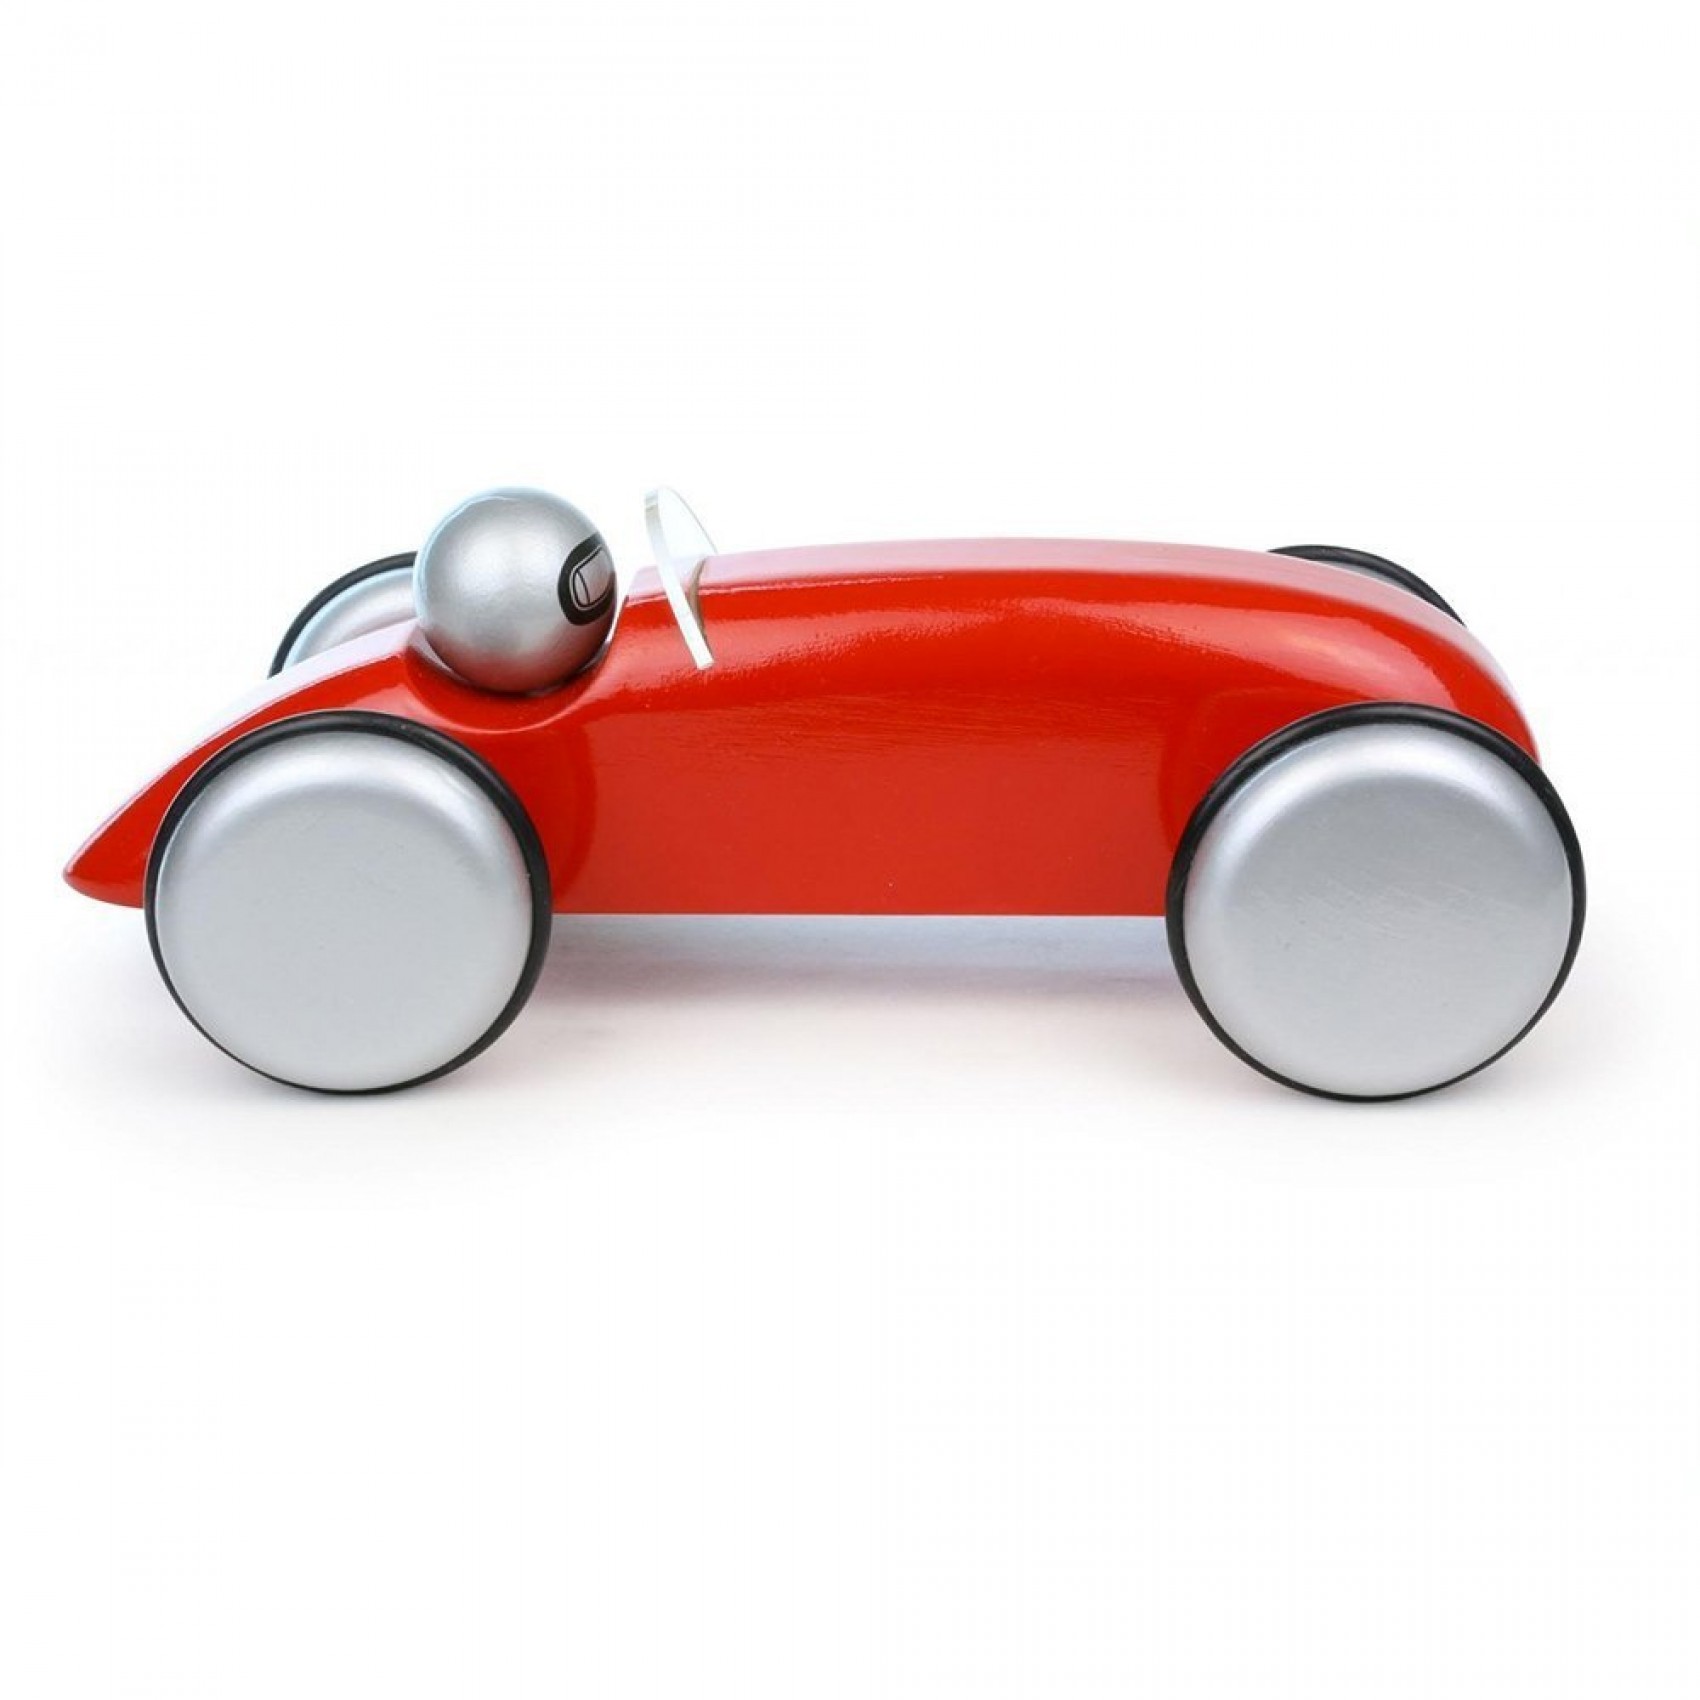 Coffret voiture rouge avec un personnage en bois